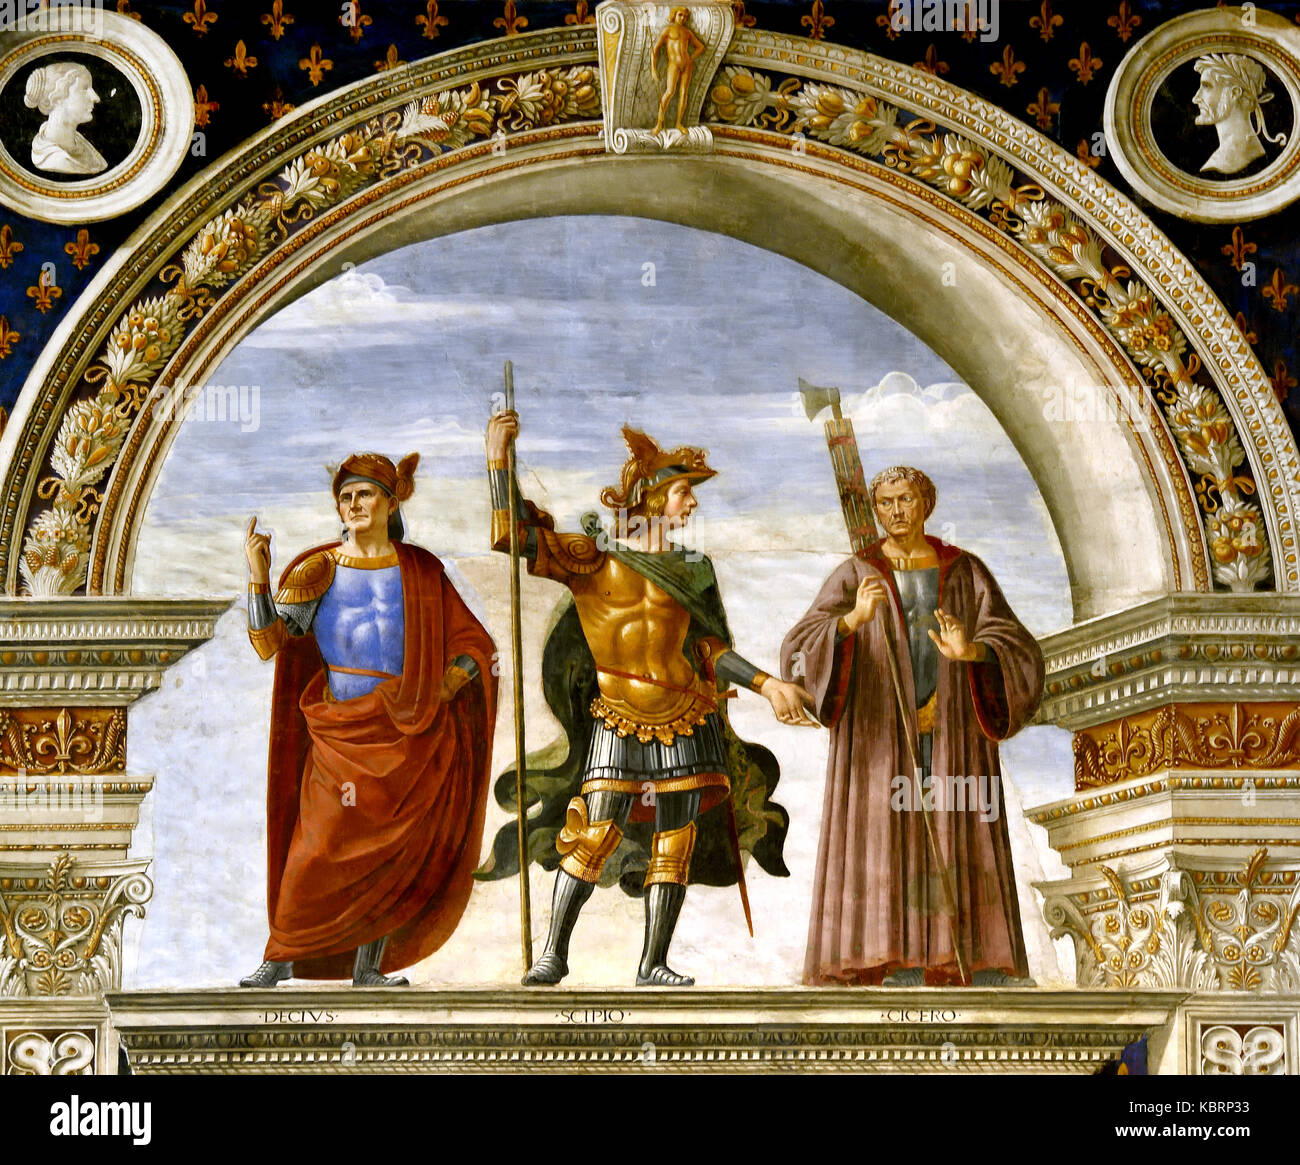 Zimmer von den Lilien, von Domenico Ghirlandaio, 1482-1484, 15. Jahrhundert, Fresko Toskana Decius, Scipio und Cicero (Decio, Scipione e Cicerone), der Palazzo Vecchio Florenz Italienisch Italien Stockfoto